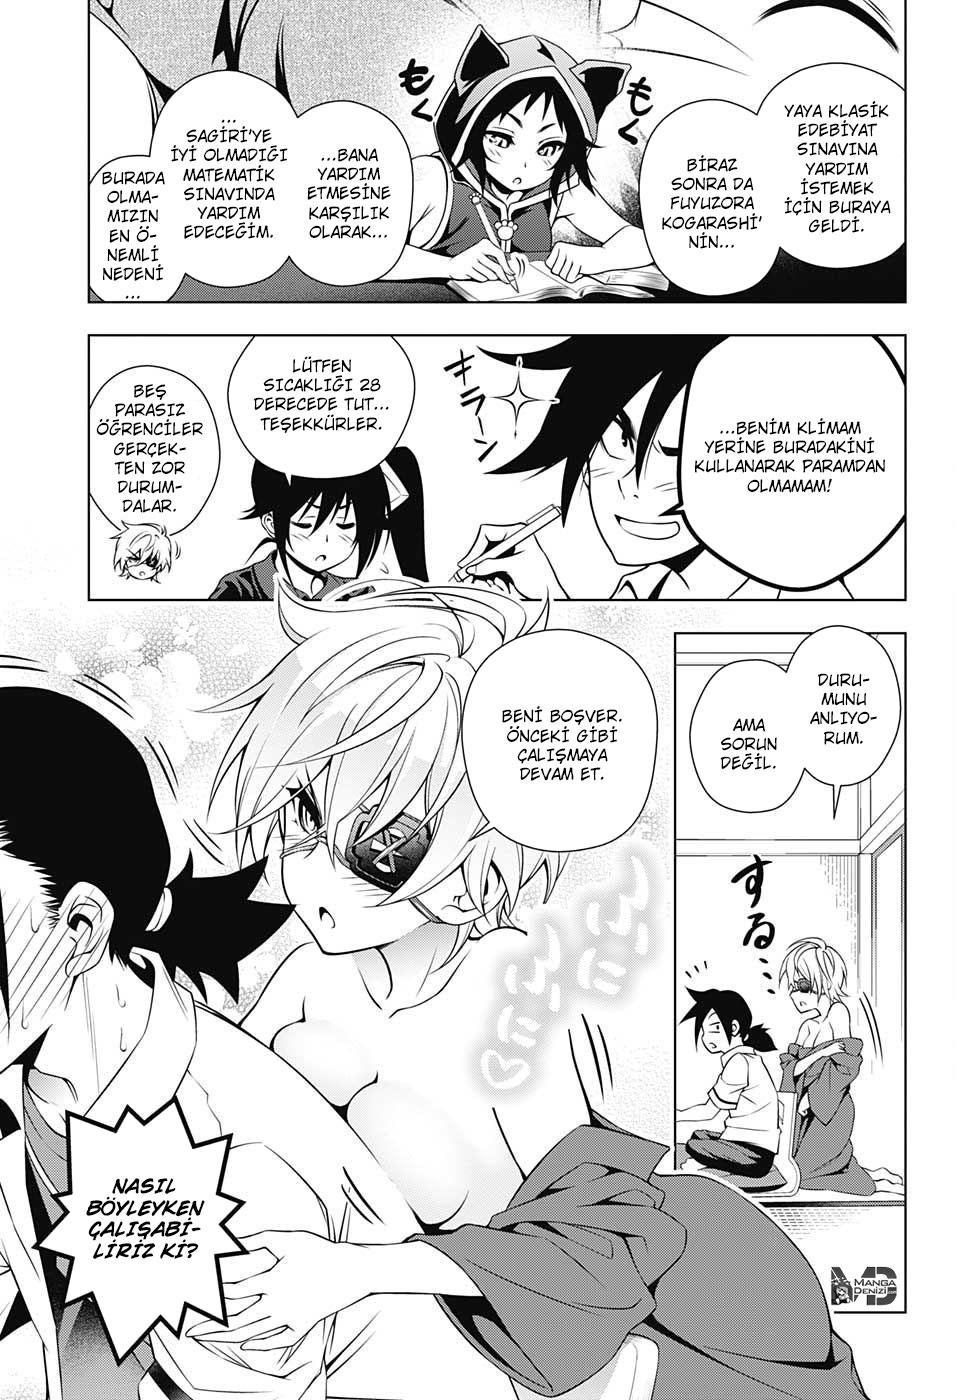 Yuragi-sou no Yuuna-san mangasının 027 bölümünün 4. sayfasını okuyorsunuz.